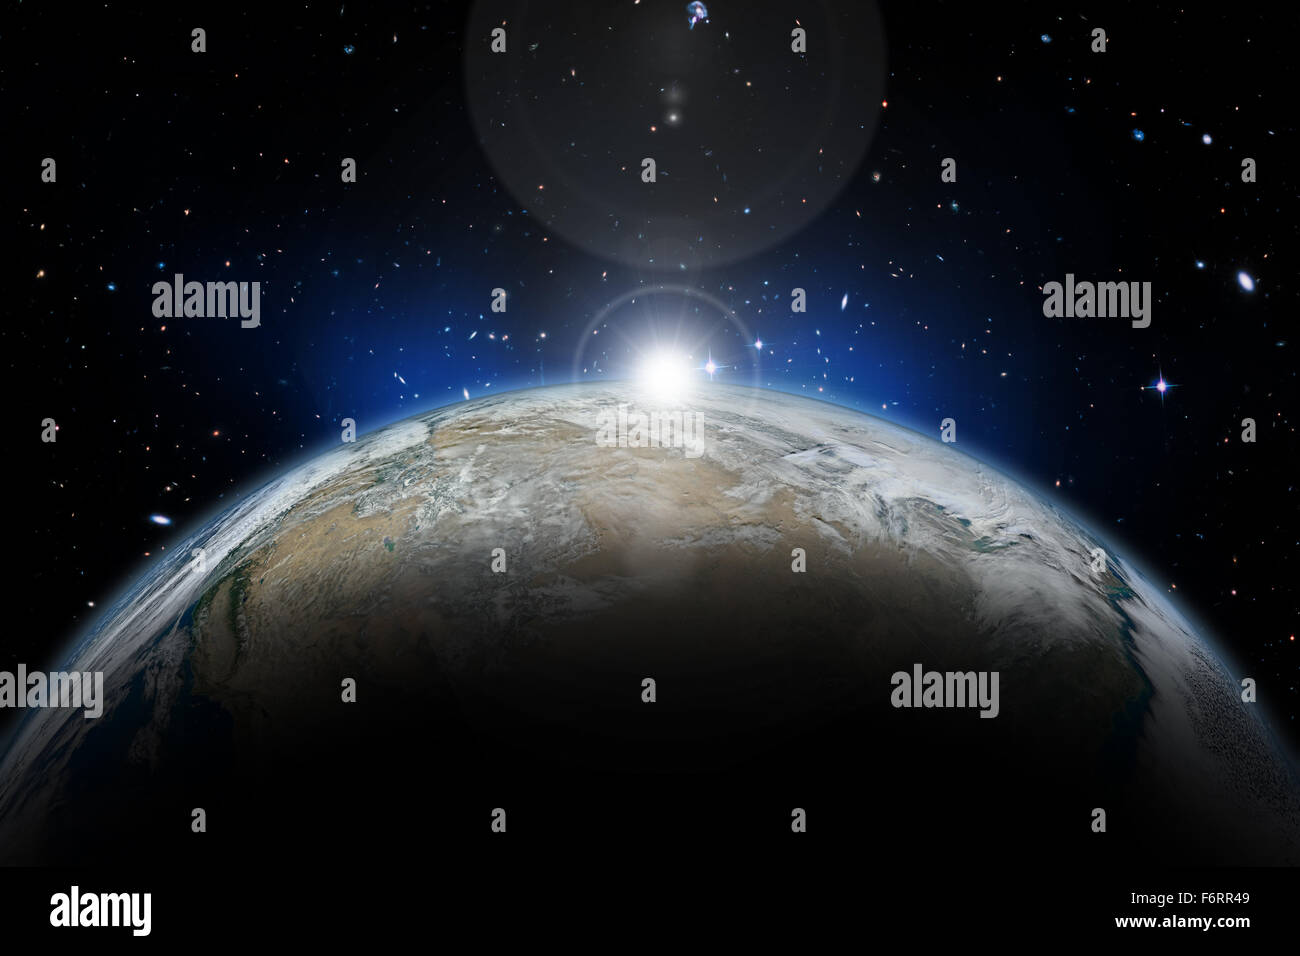 Weltraum Hintergrund mit Erde und Nebel im Sternenhimmel - Elemente dieses Bildes, eingerichtet von der NASA Stockfoto